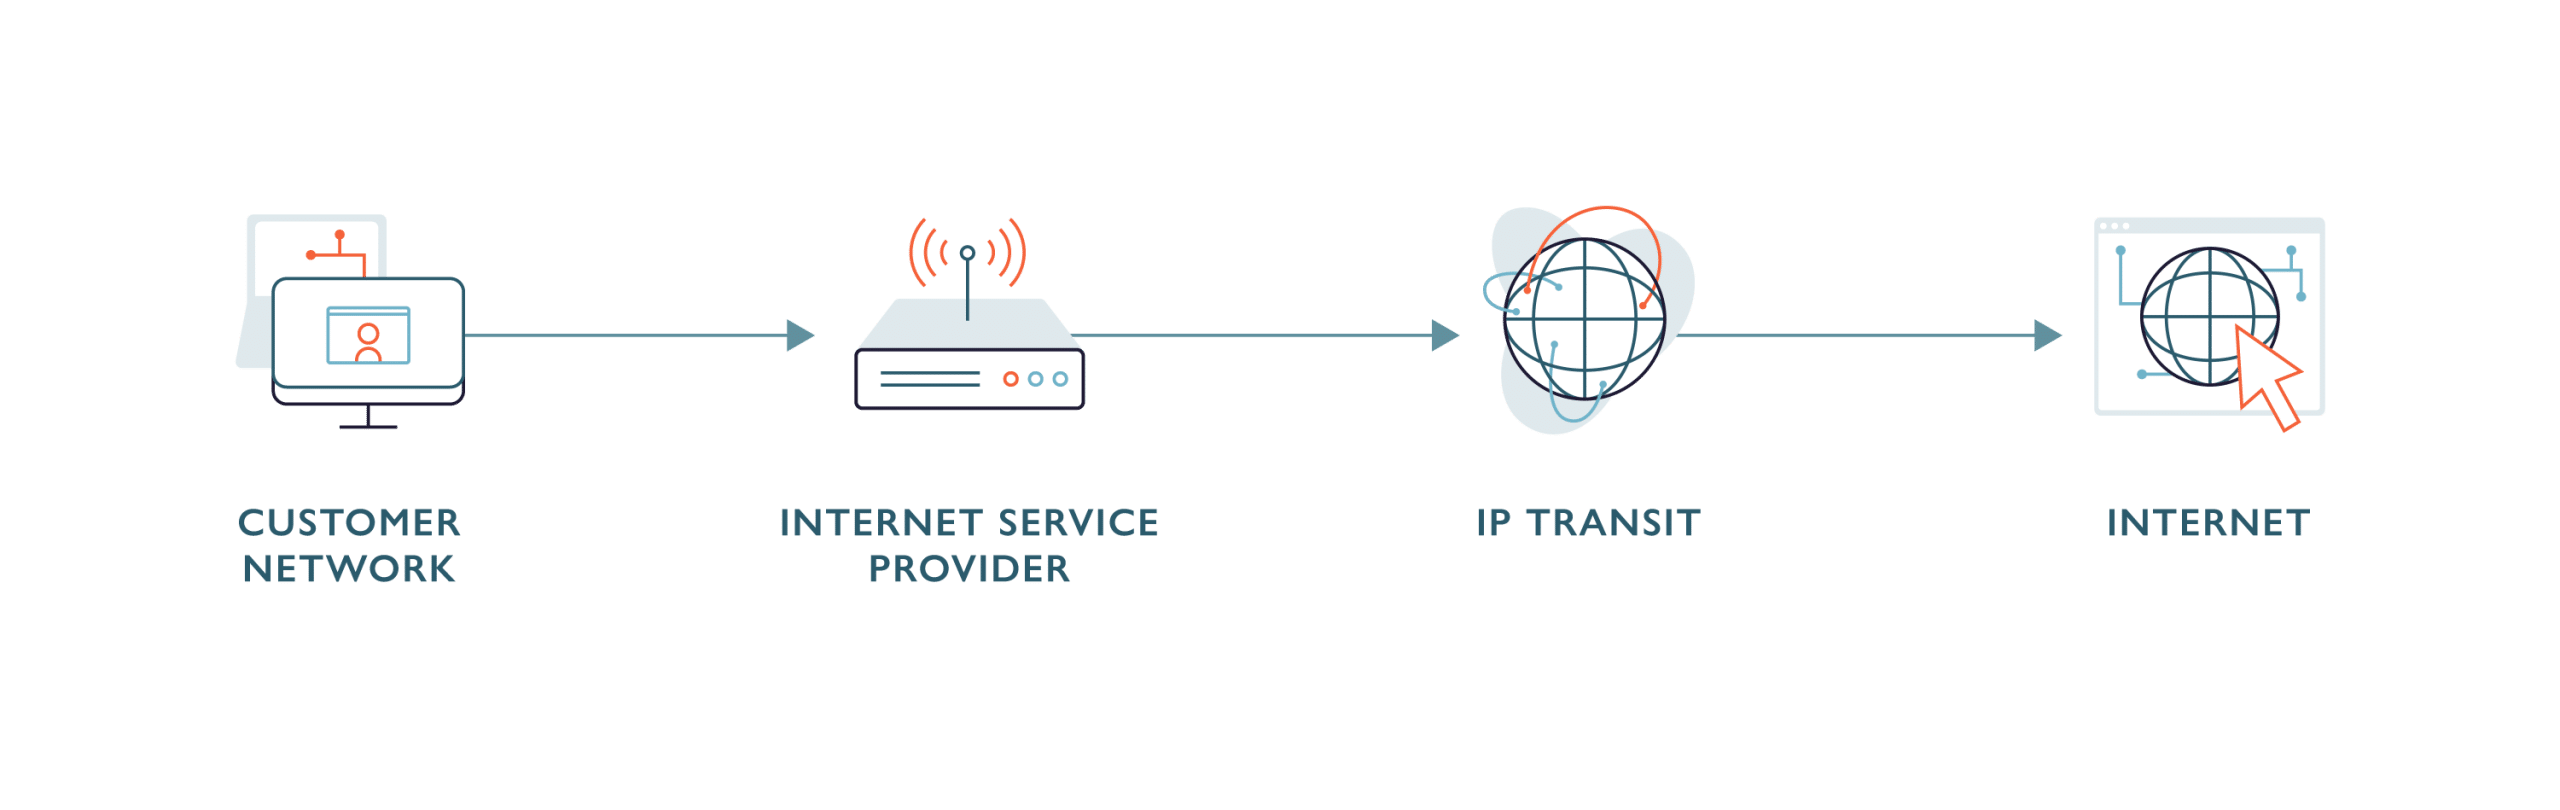 IP Transit Diagram